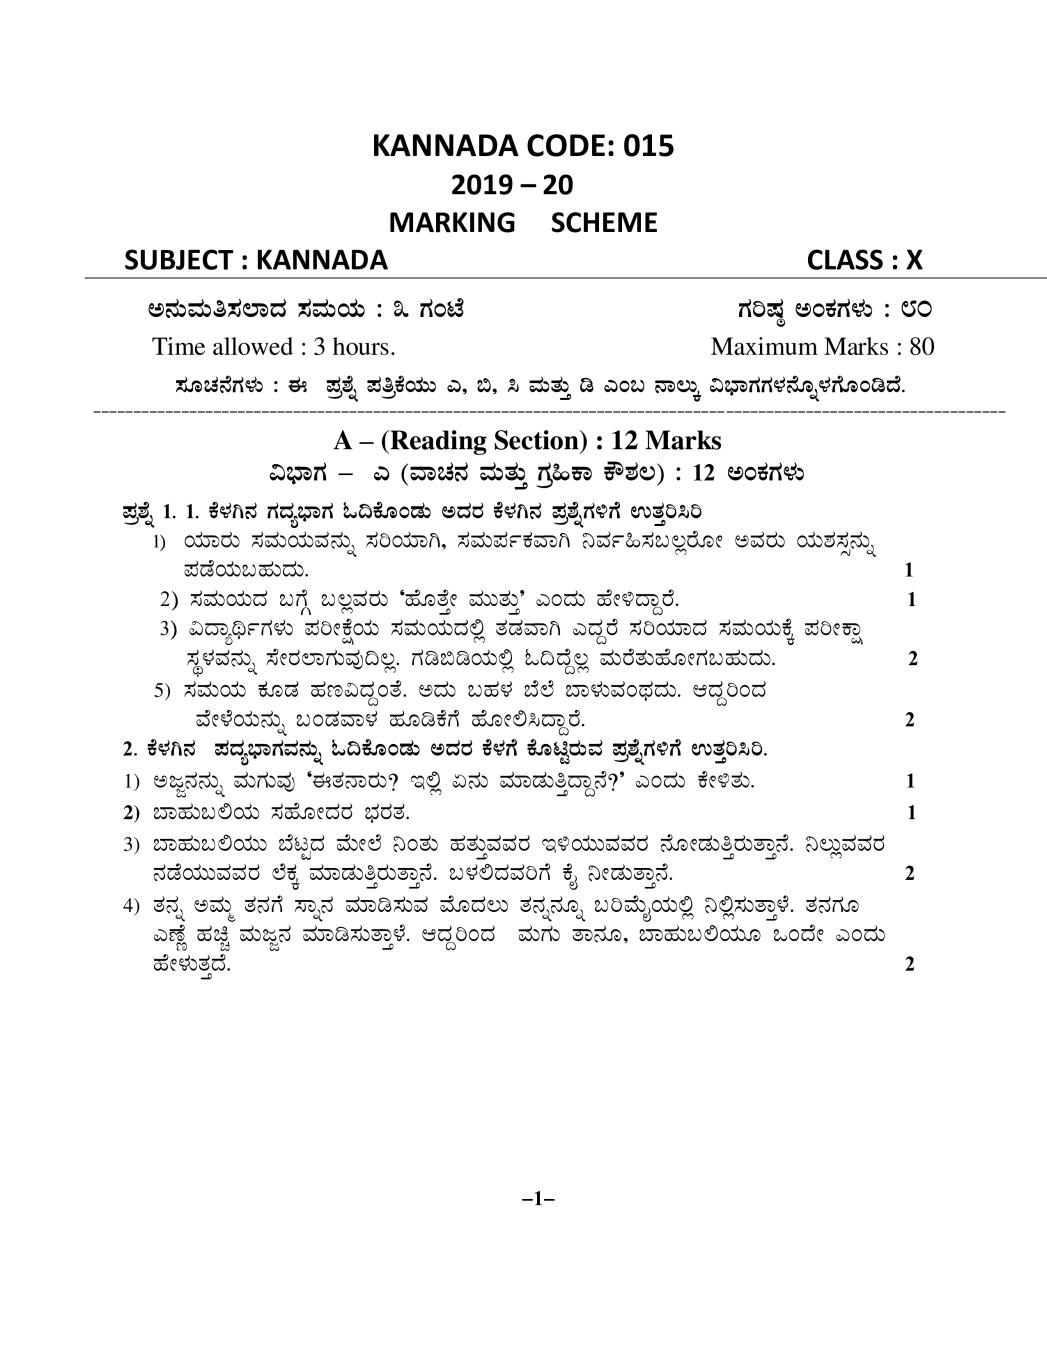 CBSE Class 10 Marking Scheme 2020 for Kannada - Page 1